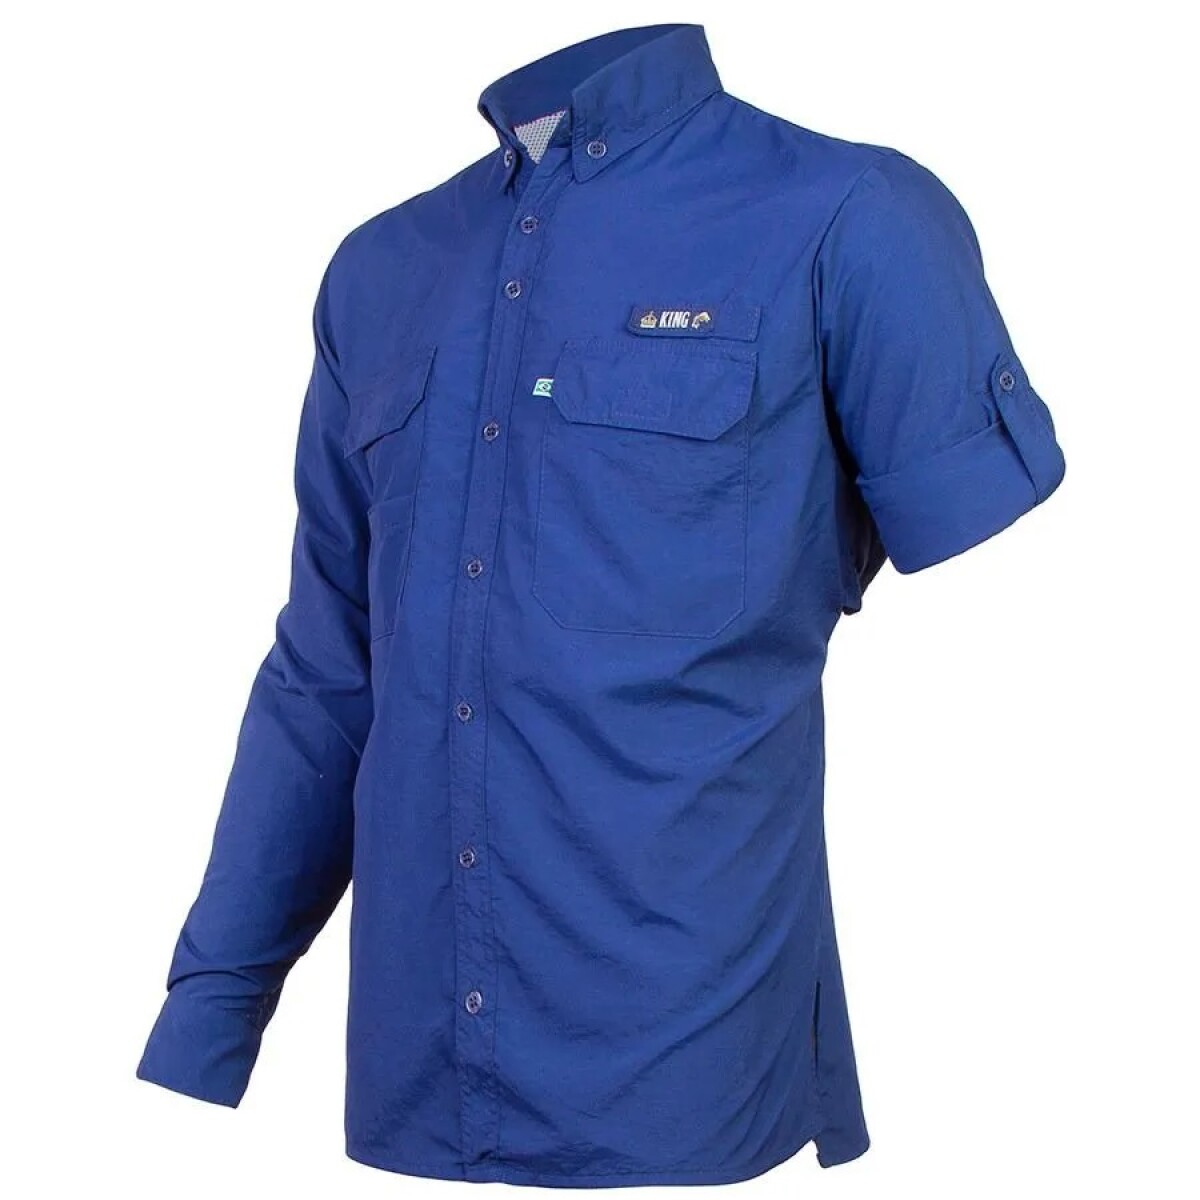 Camisa Antares con protección UV - King brasil - Azul 